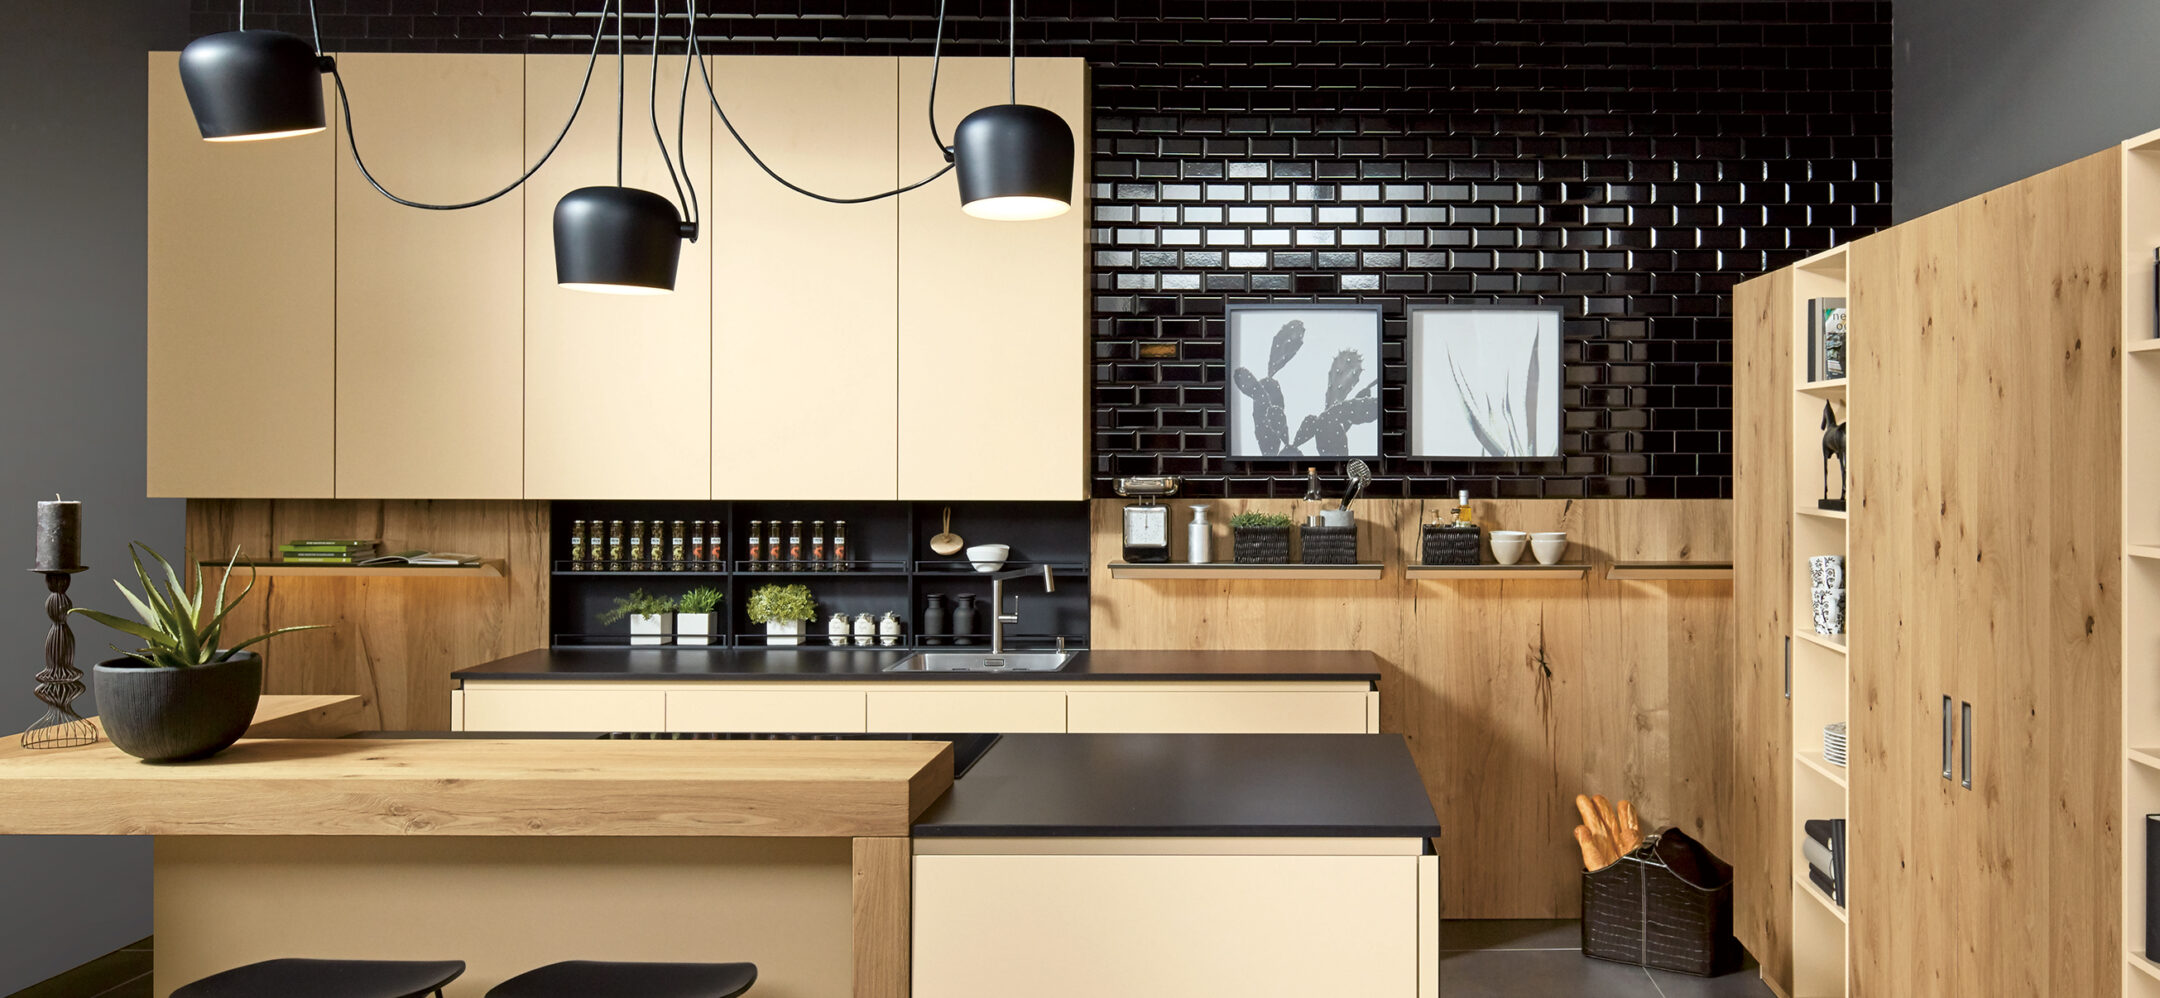 Sandfarbene Küche mit Küchenrückwand in schwarz